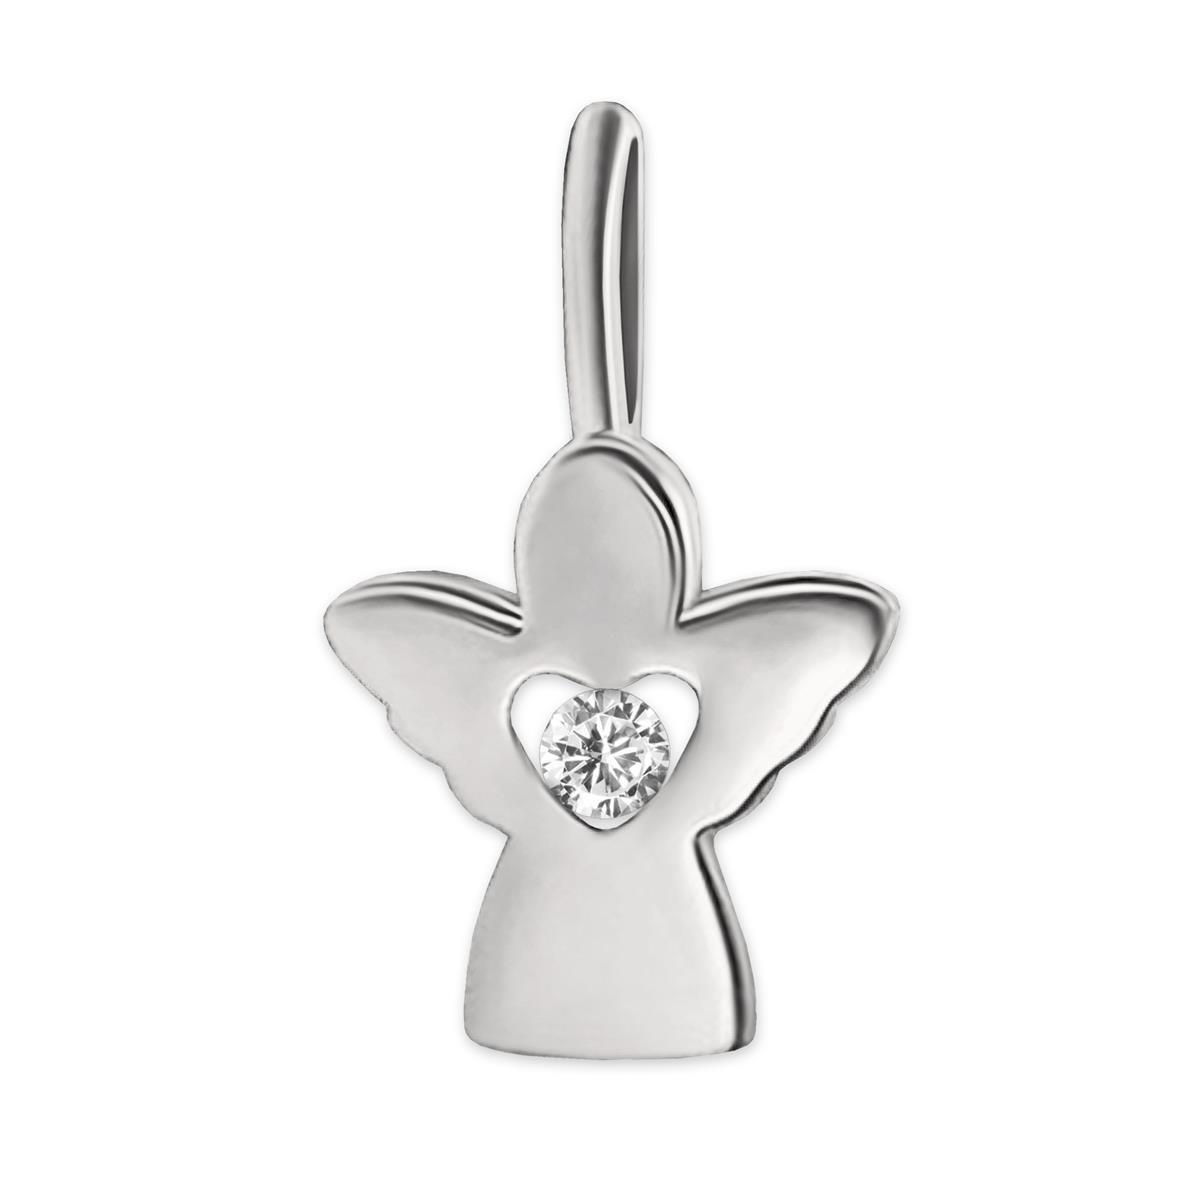 Silberner Anhänger Engel 10 mm mit einem Zirkonia im offenem Innen-Herz gefaßt STERLING SILBER 925 silberweiss